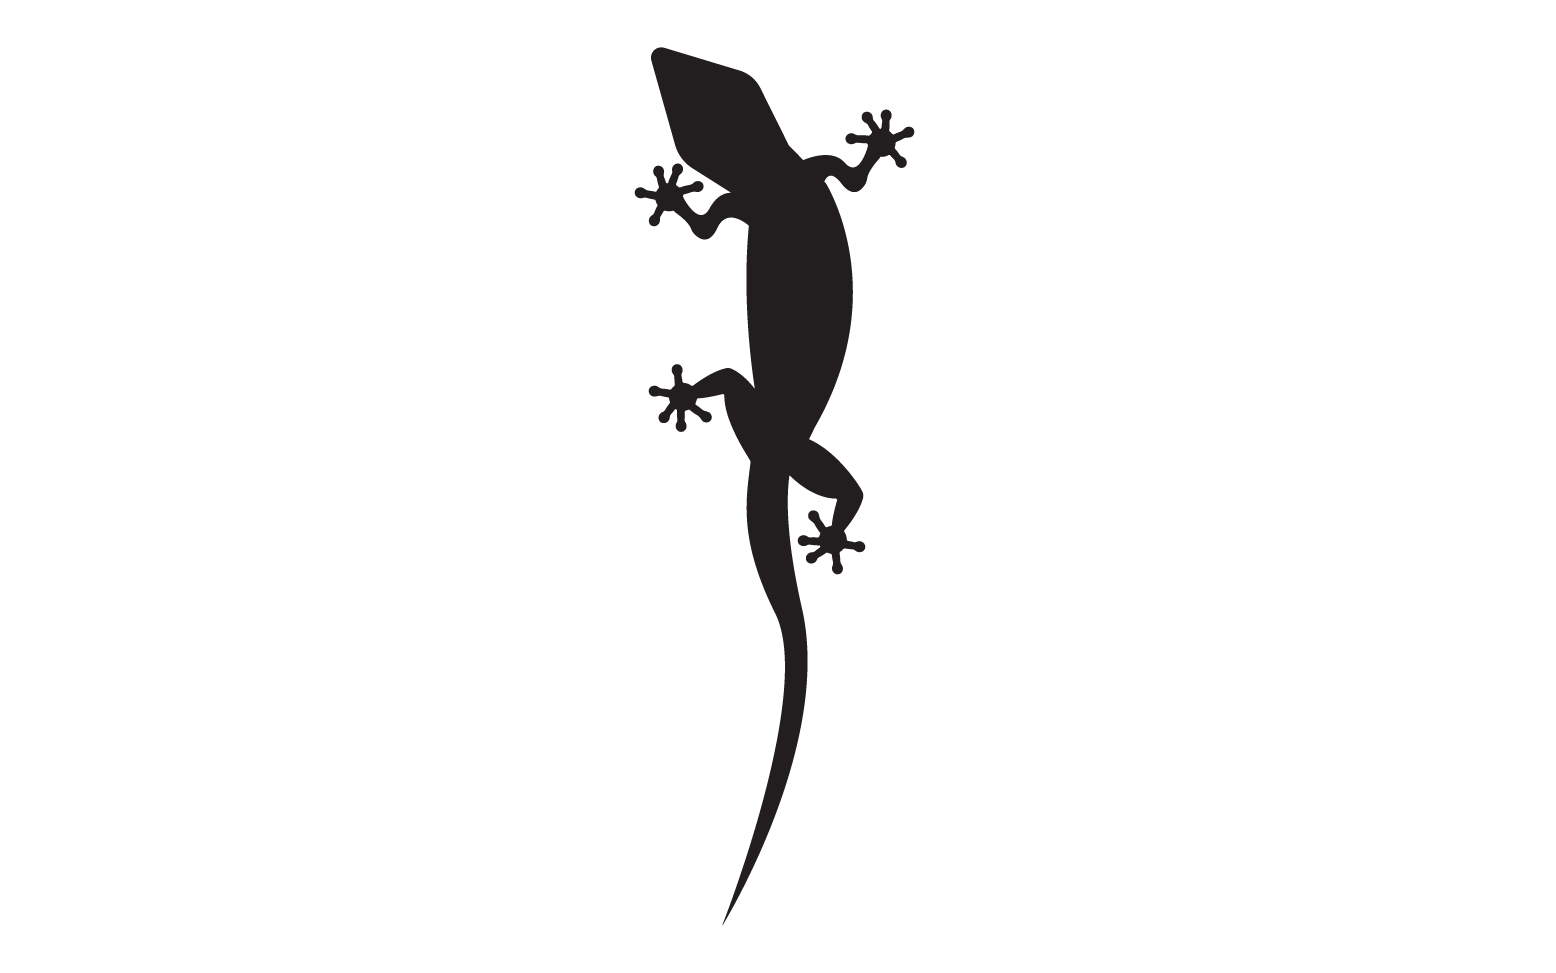 Lizard chameleon home lizard logo v62